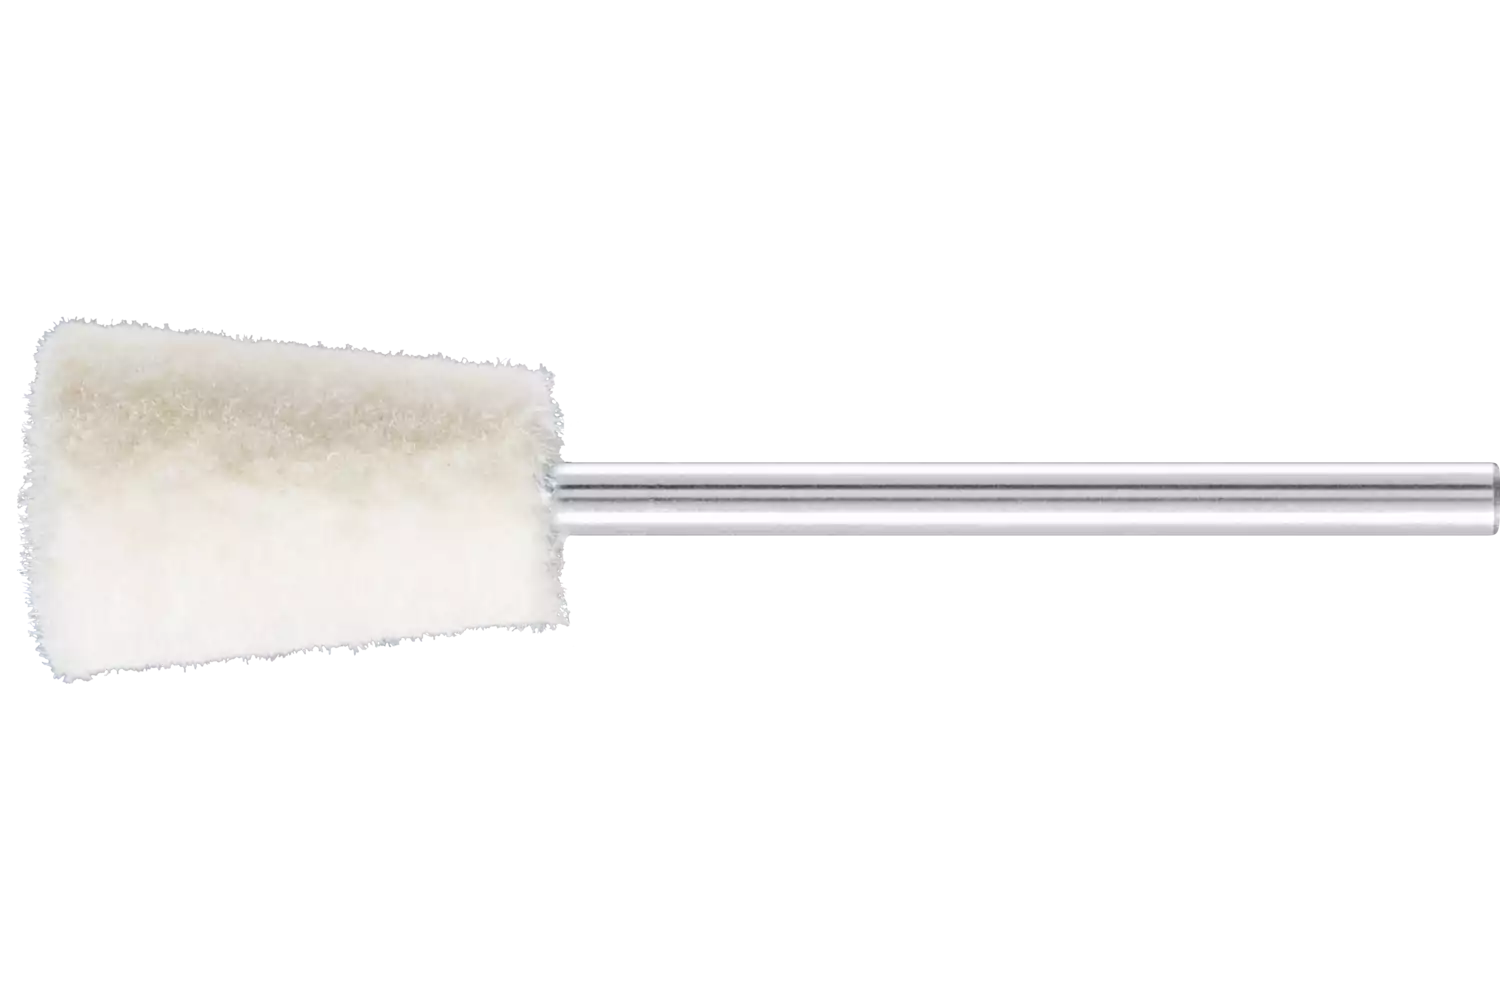 Feltri con gambo per lucidare medio-duri forma a cono rovesciato Ø 10x15 mm, gambo Ø 2,35 mm 1